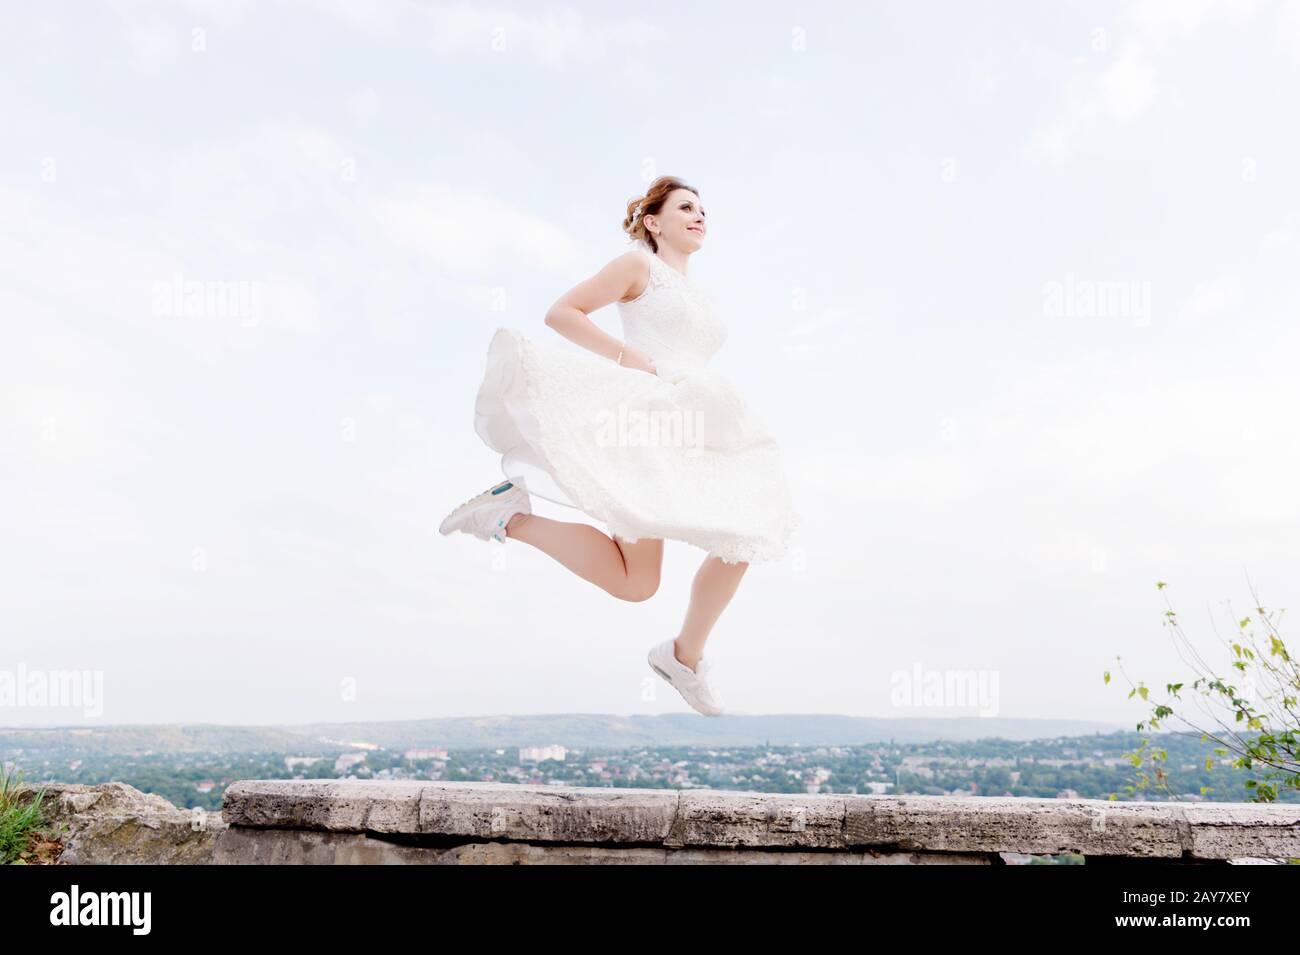 Vor dem Hintergrund des Stadtbildes einer kleinen Erholungsstadt im Nordkaukasus springt und hängt die verrückte Brautpast in den Himmel Stockfoto